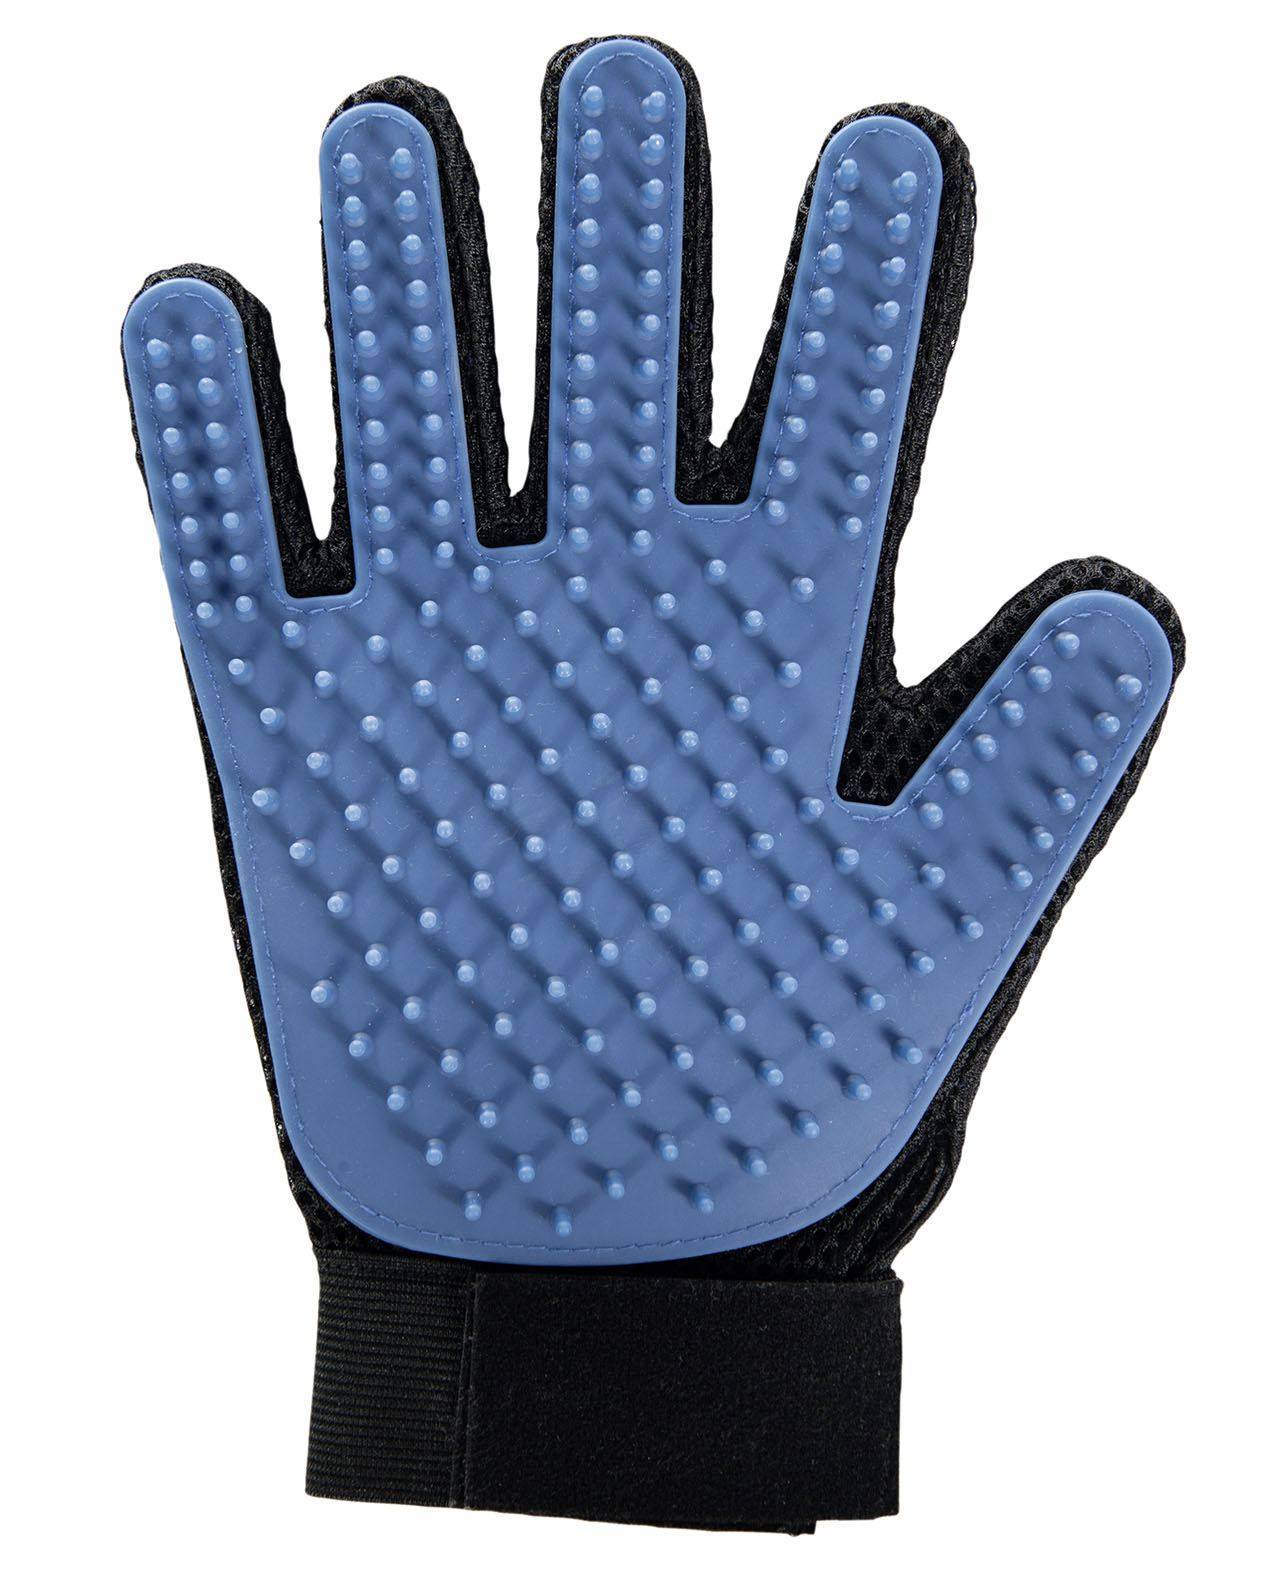 Grooming glove pet hair - Blue/Black